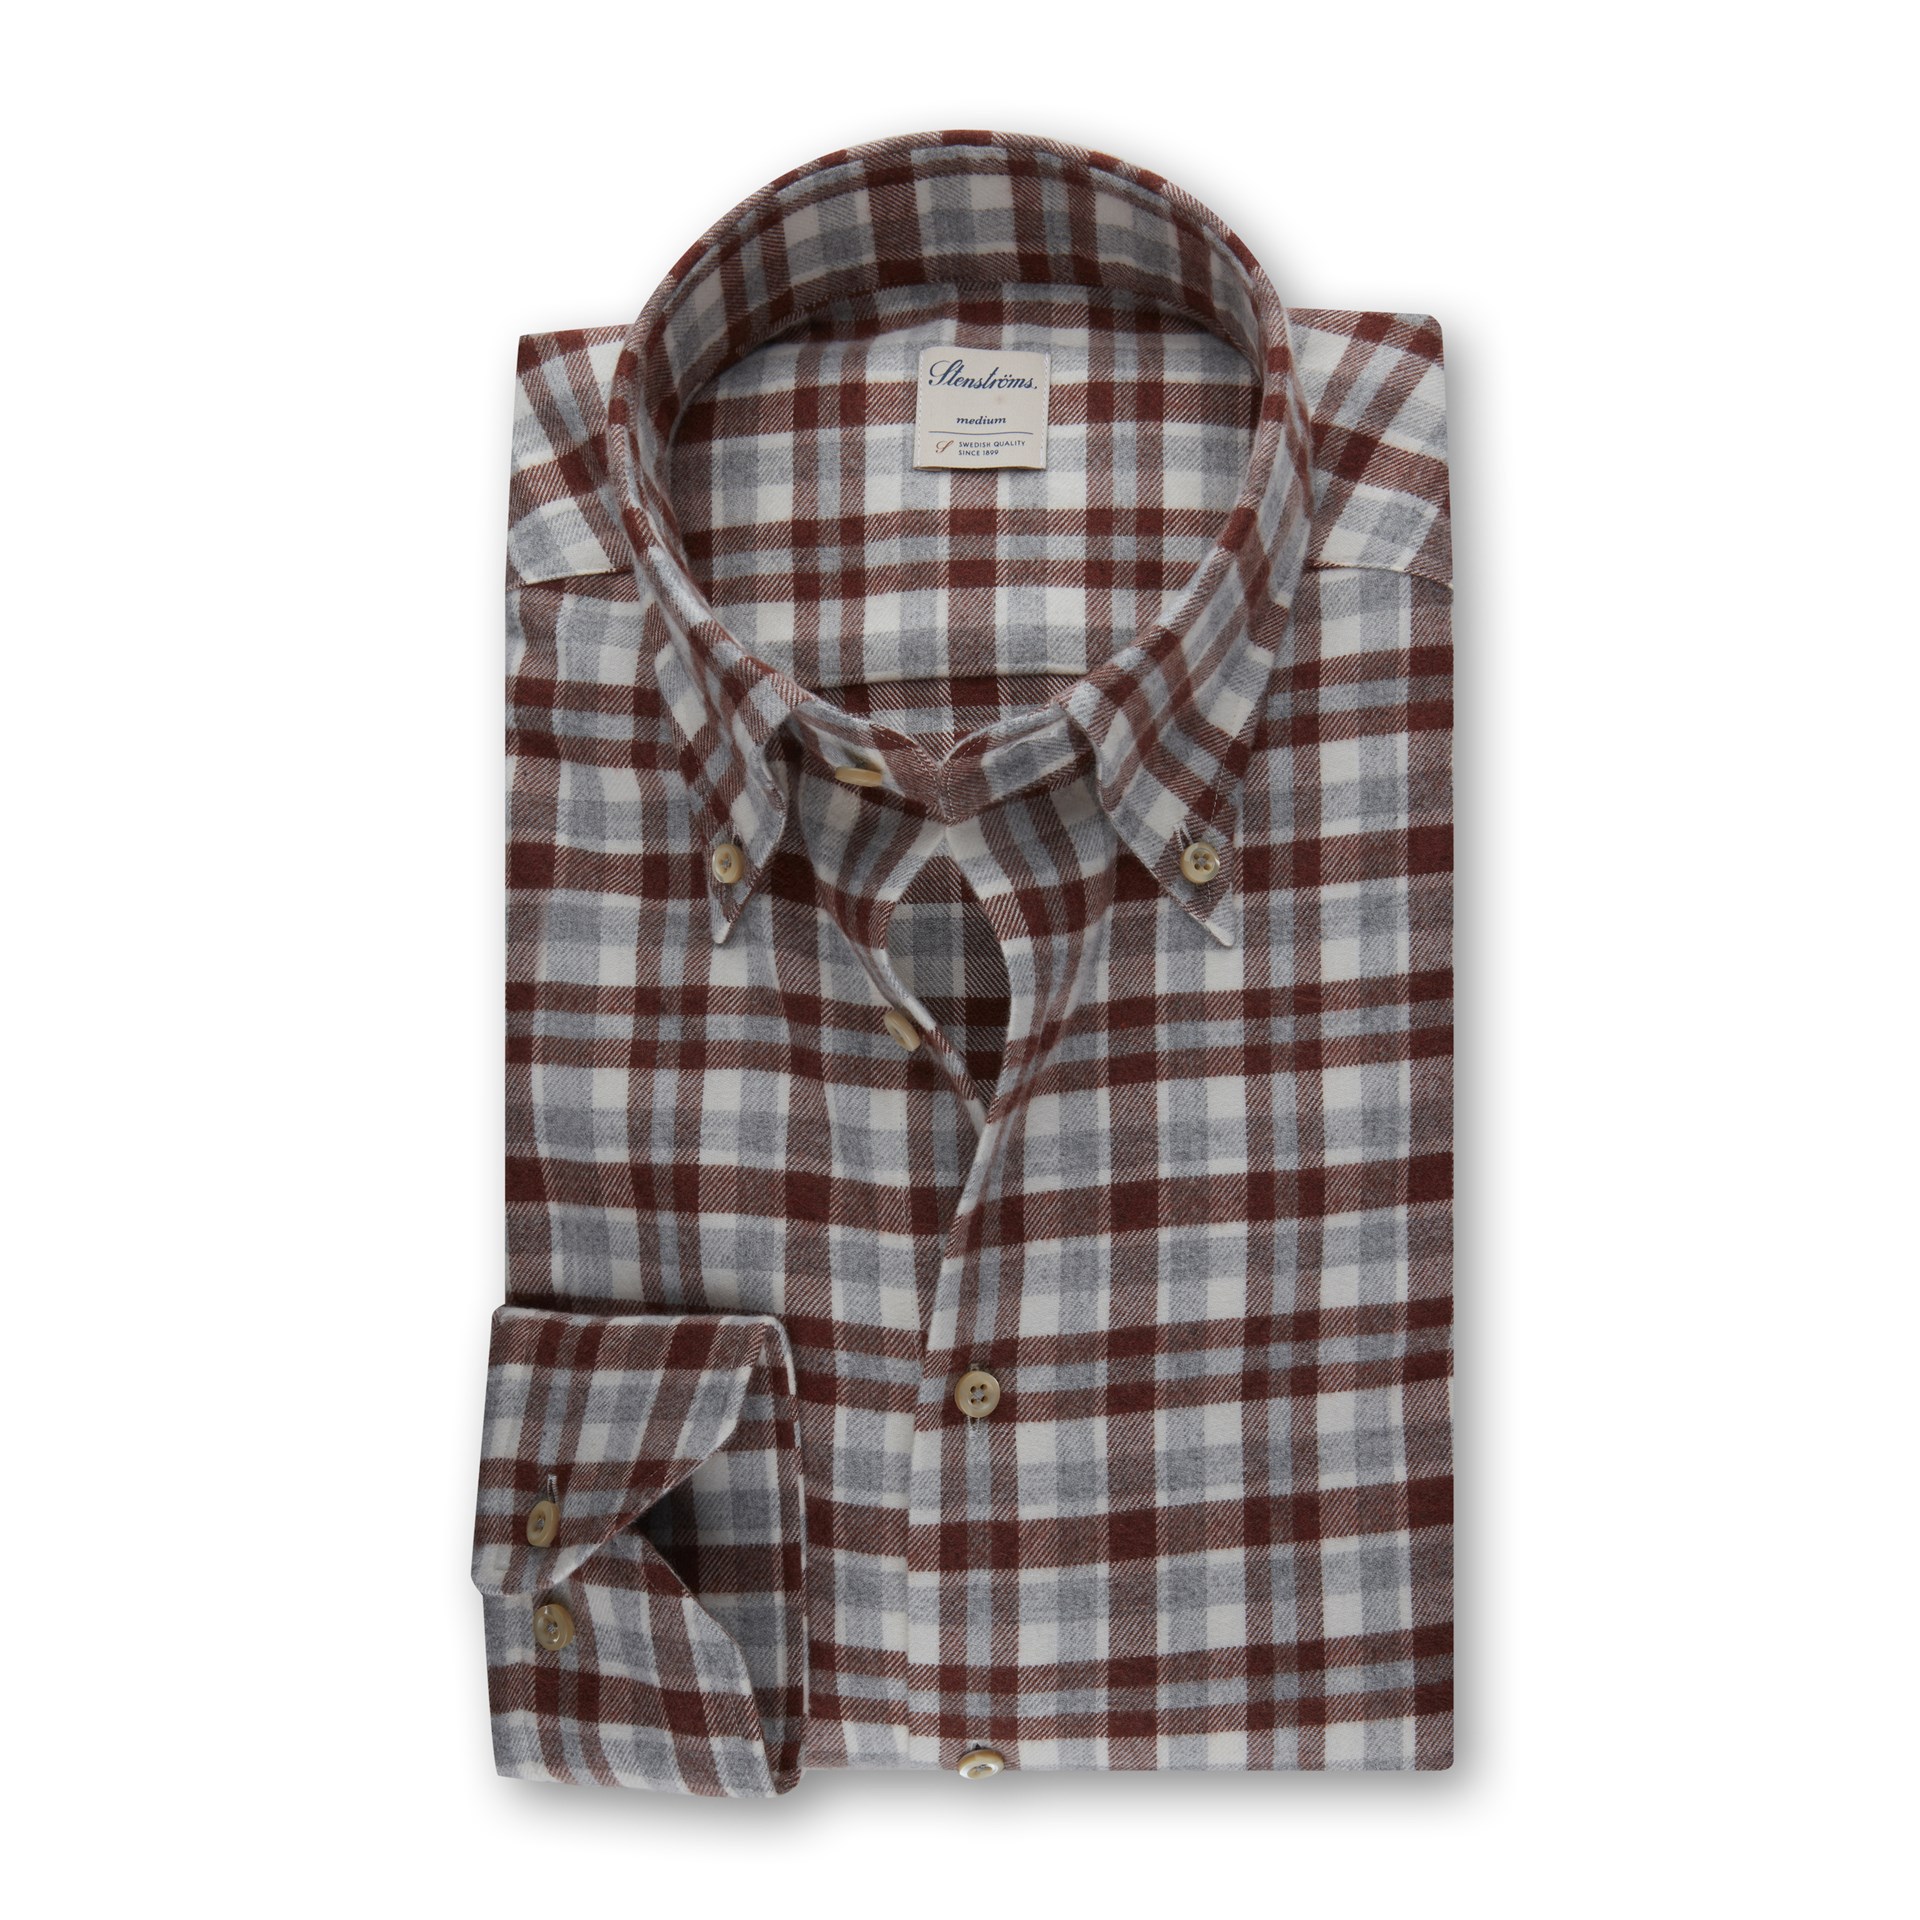 Stenstroms plaid flannel shirt